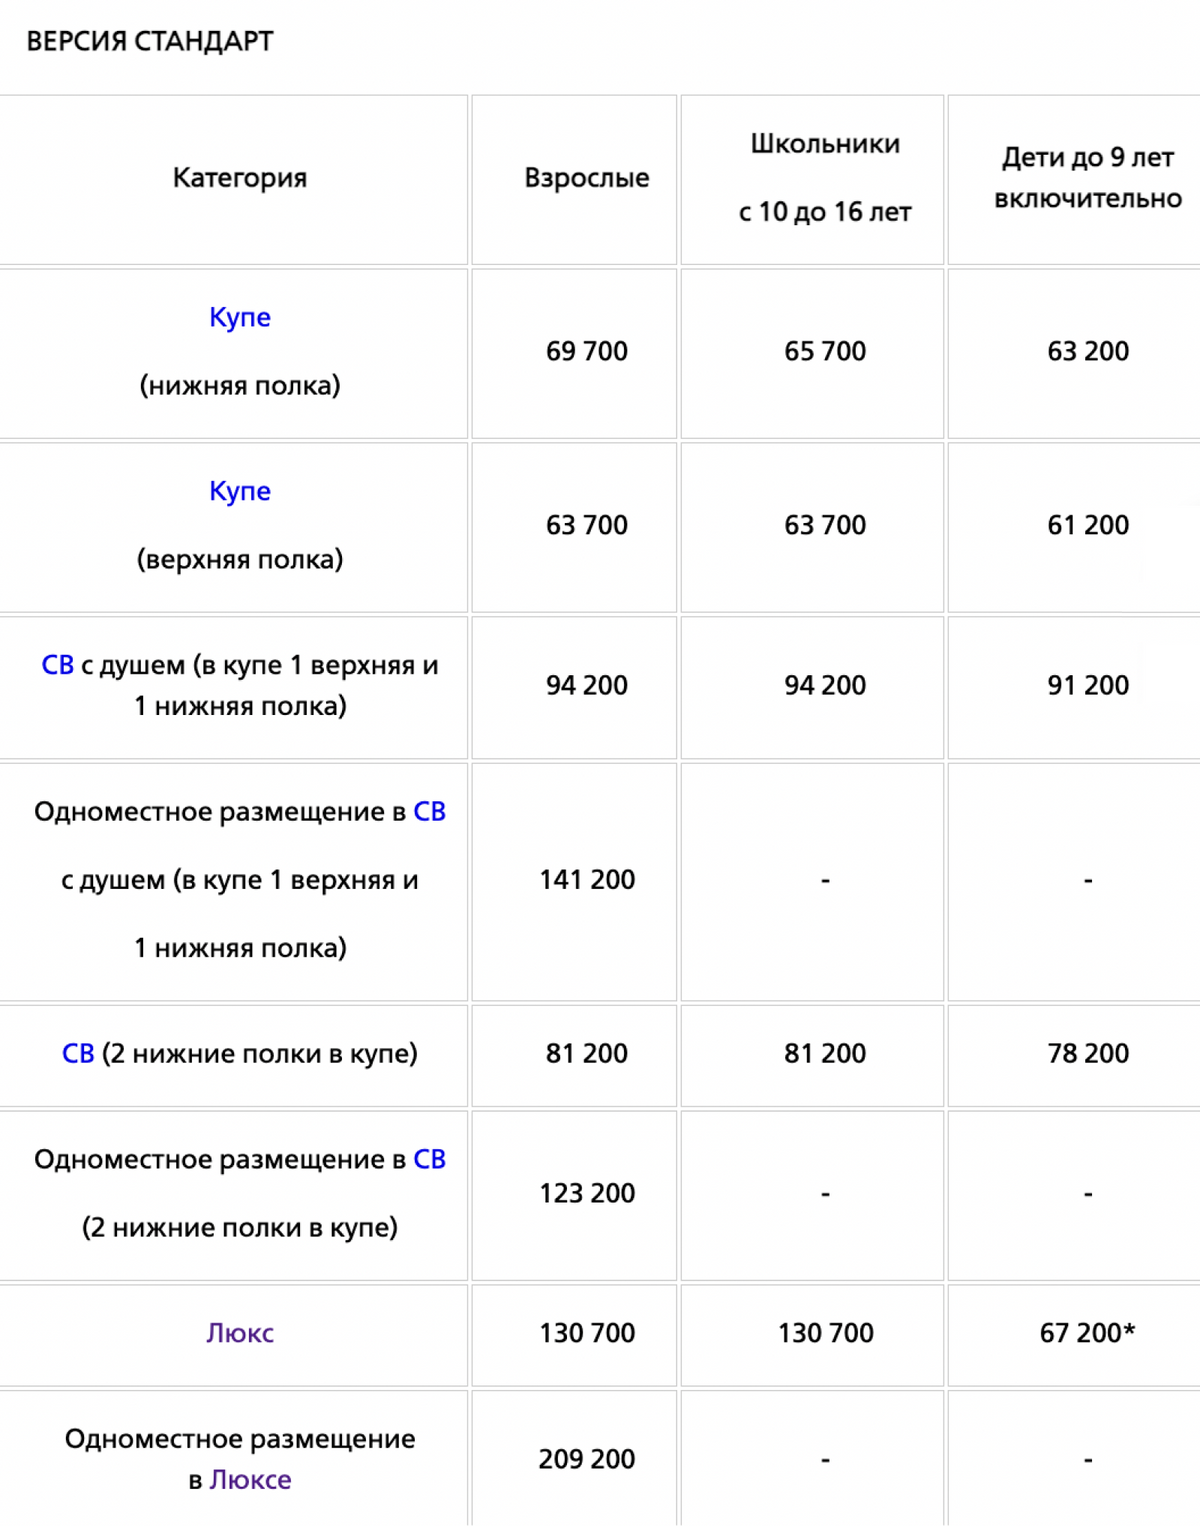 Цены на круиз «Жемчужина Кавказа» в 2022&nbsp;году. Источник: rzdtour.com